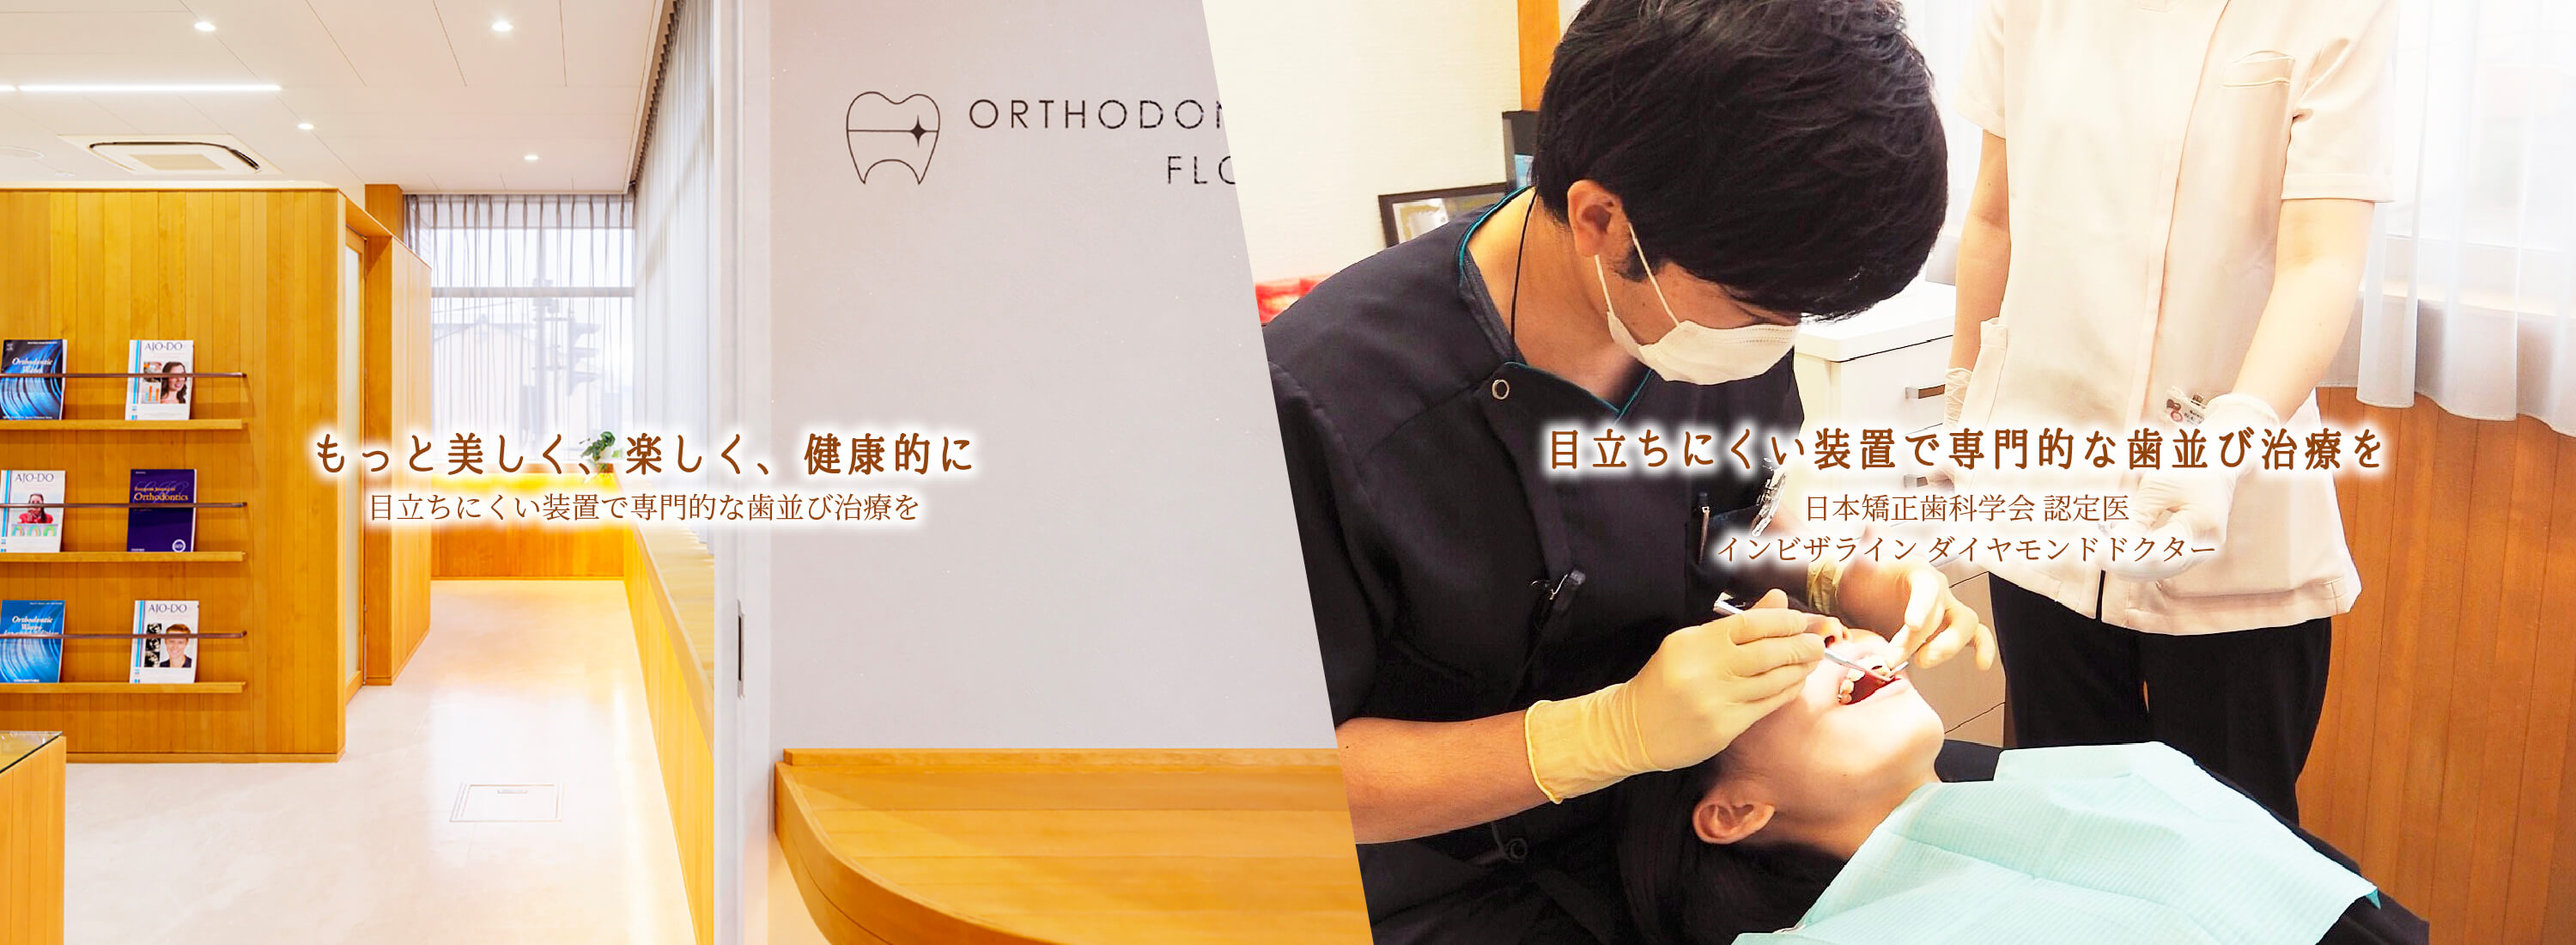 矯正歯科専門フロアでは、専門的な歯並び治療を行なっております